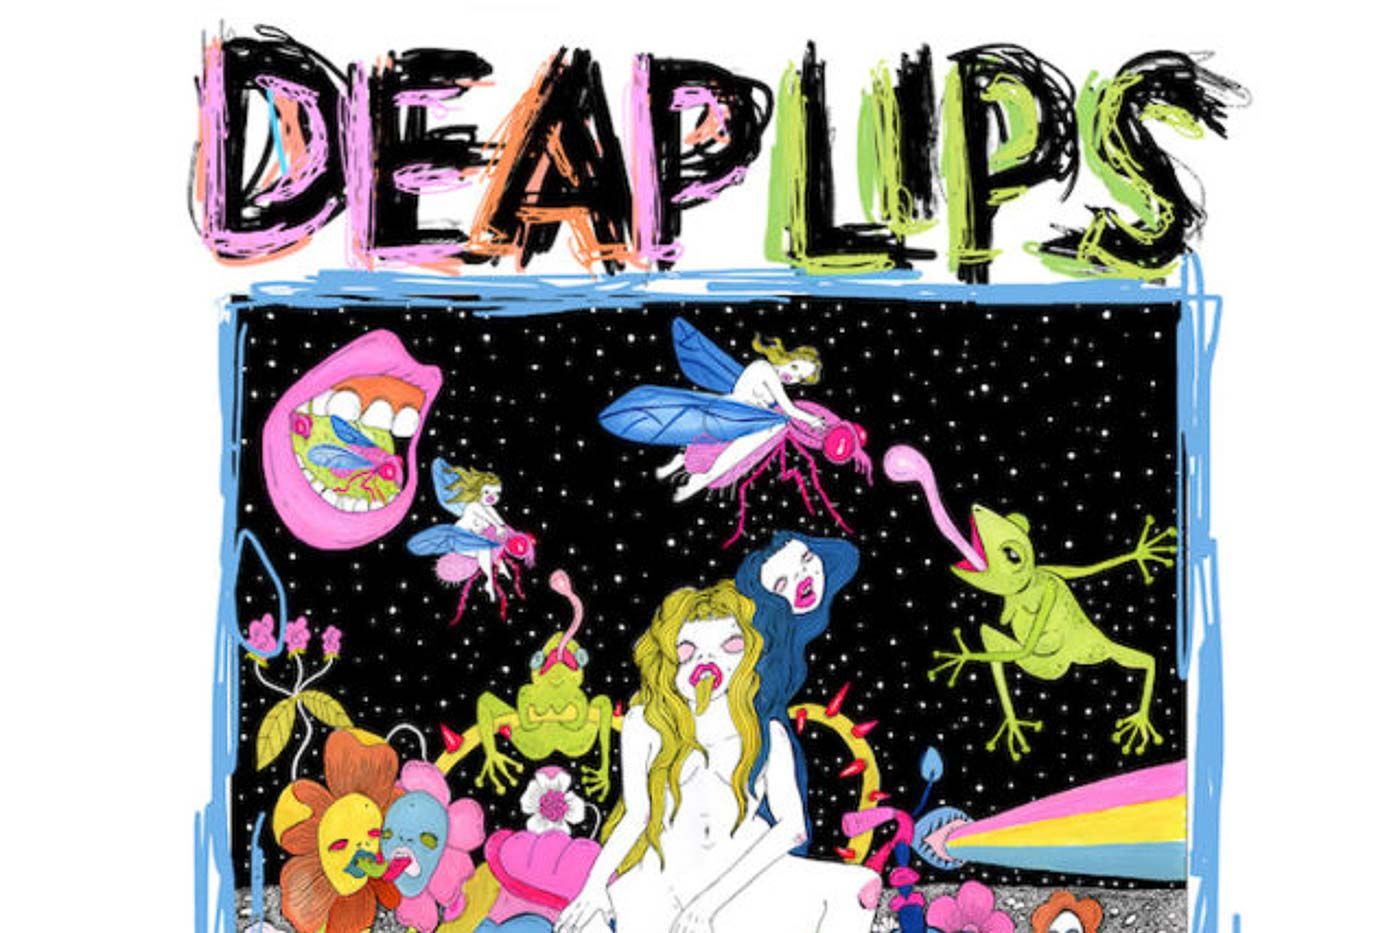 Deap Lips “Deap Lips” (Cooking Vinyl, 2020)